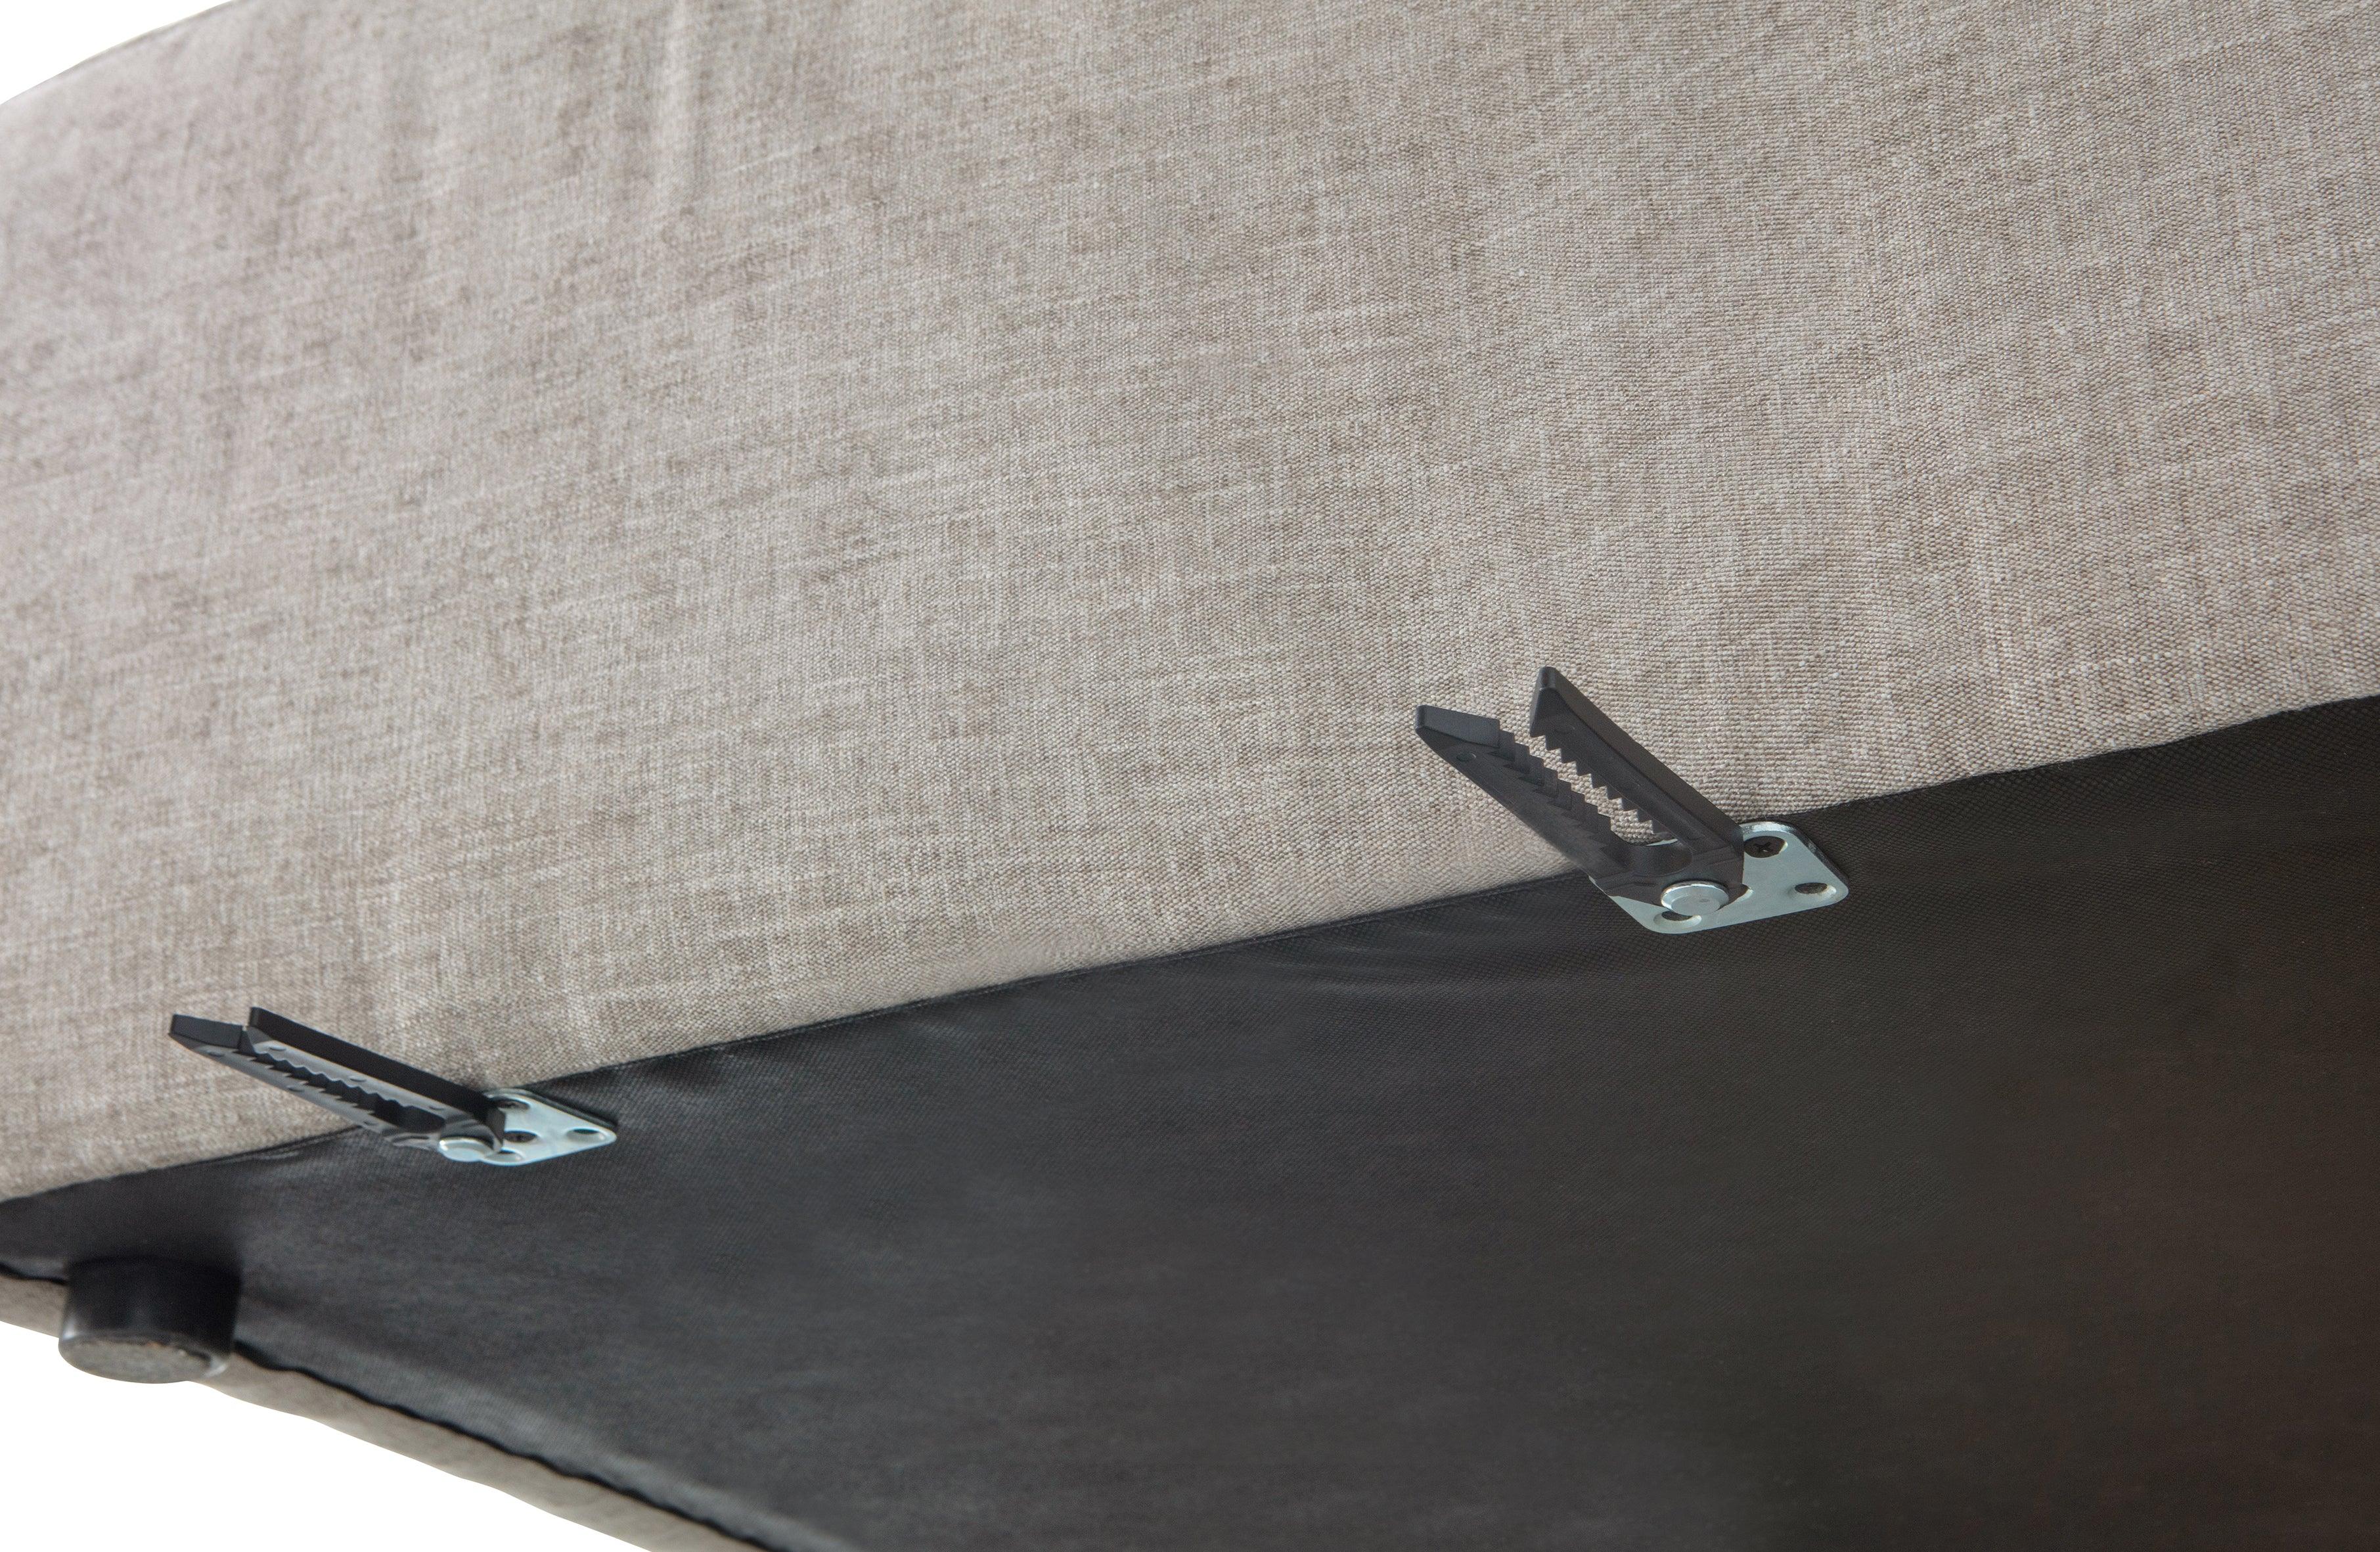 Sofa modułowa YENT beżowy - element narożny prawostronny Woood    Eye on Design